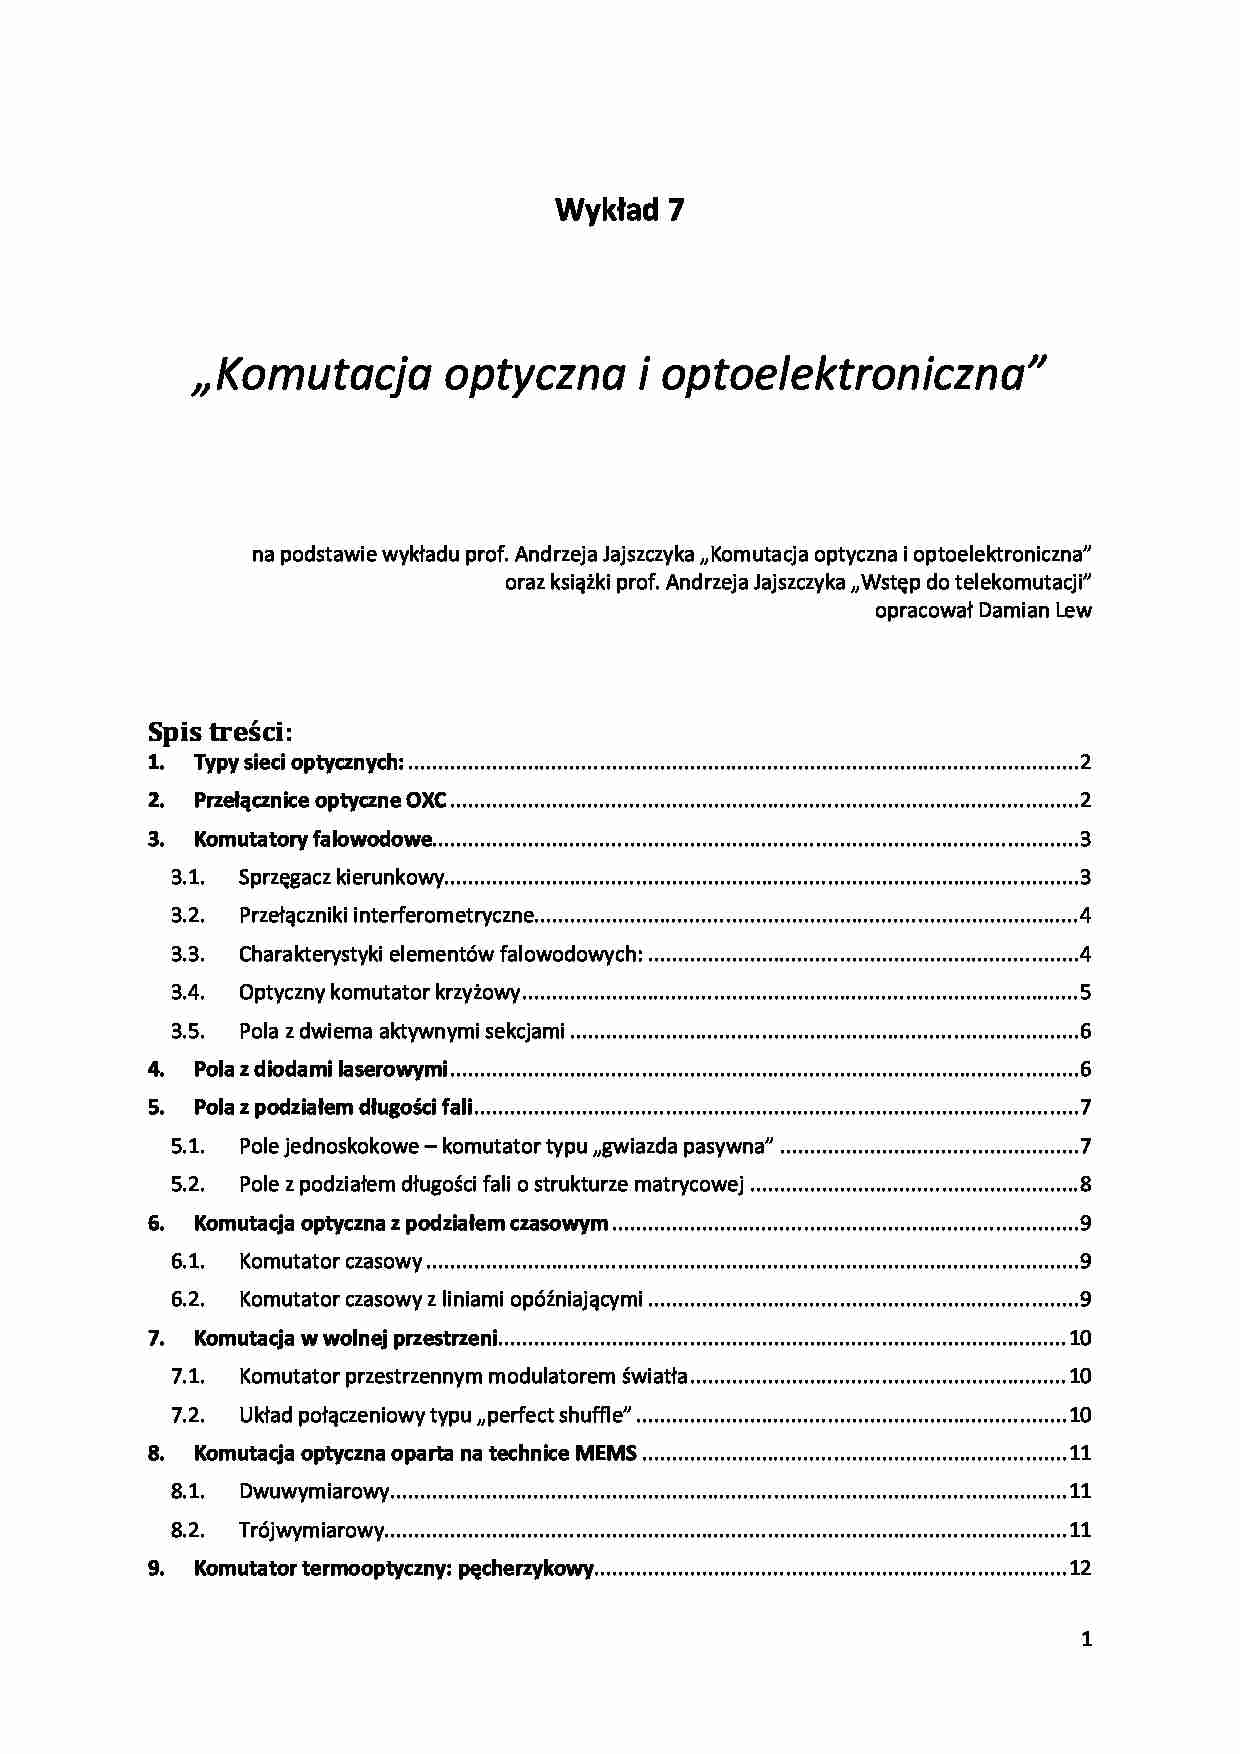 Komutacja optyczna i optoelektroniczna - strona 1